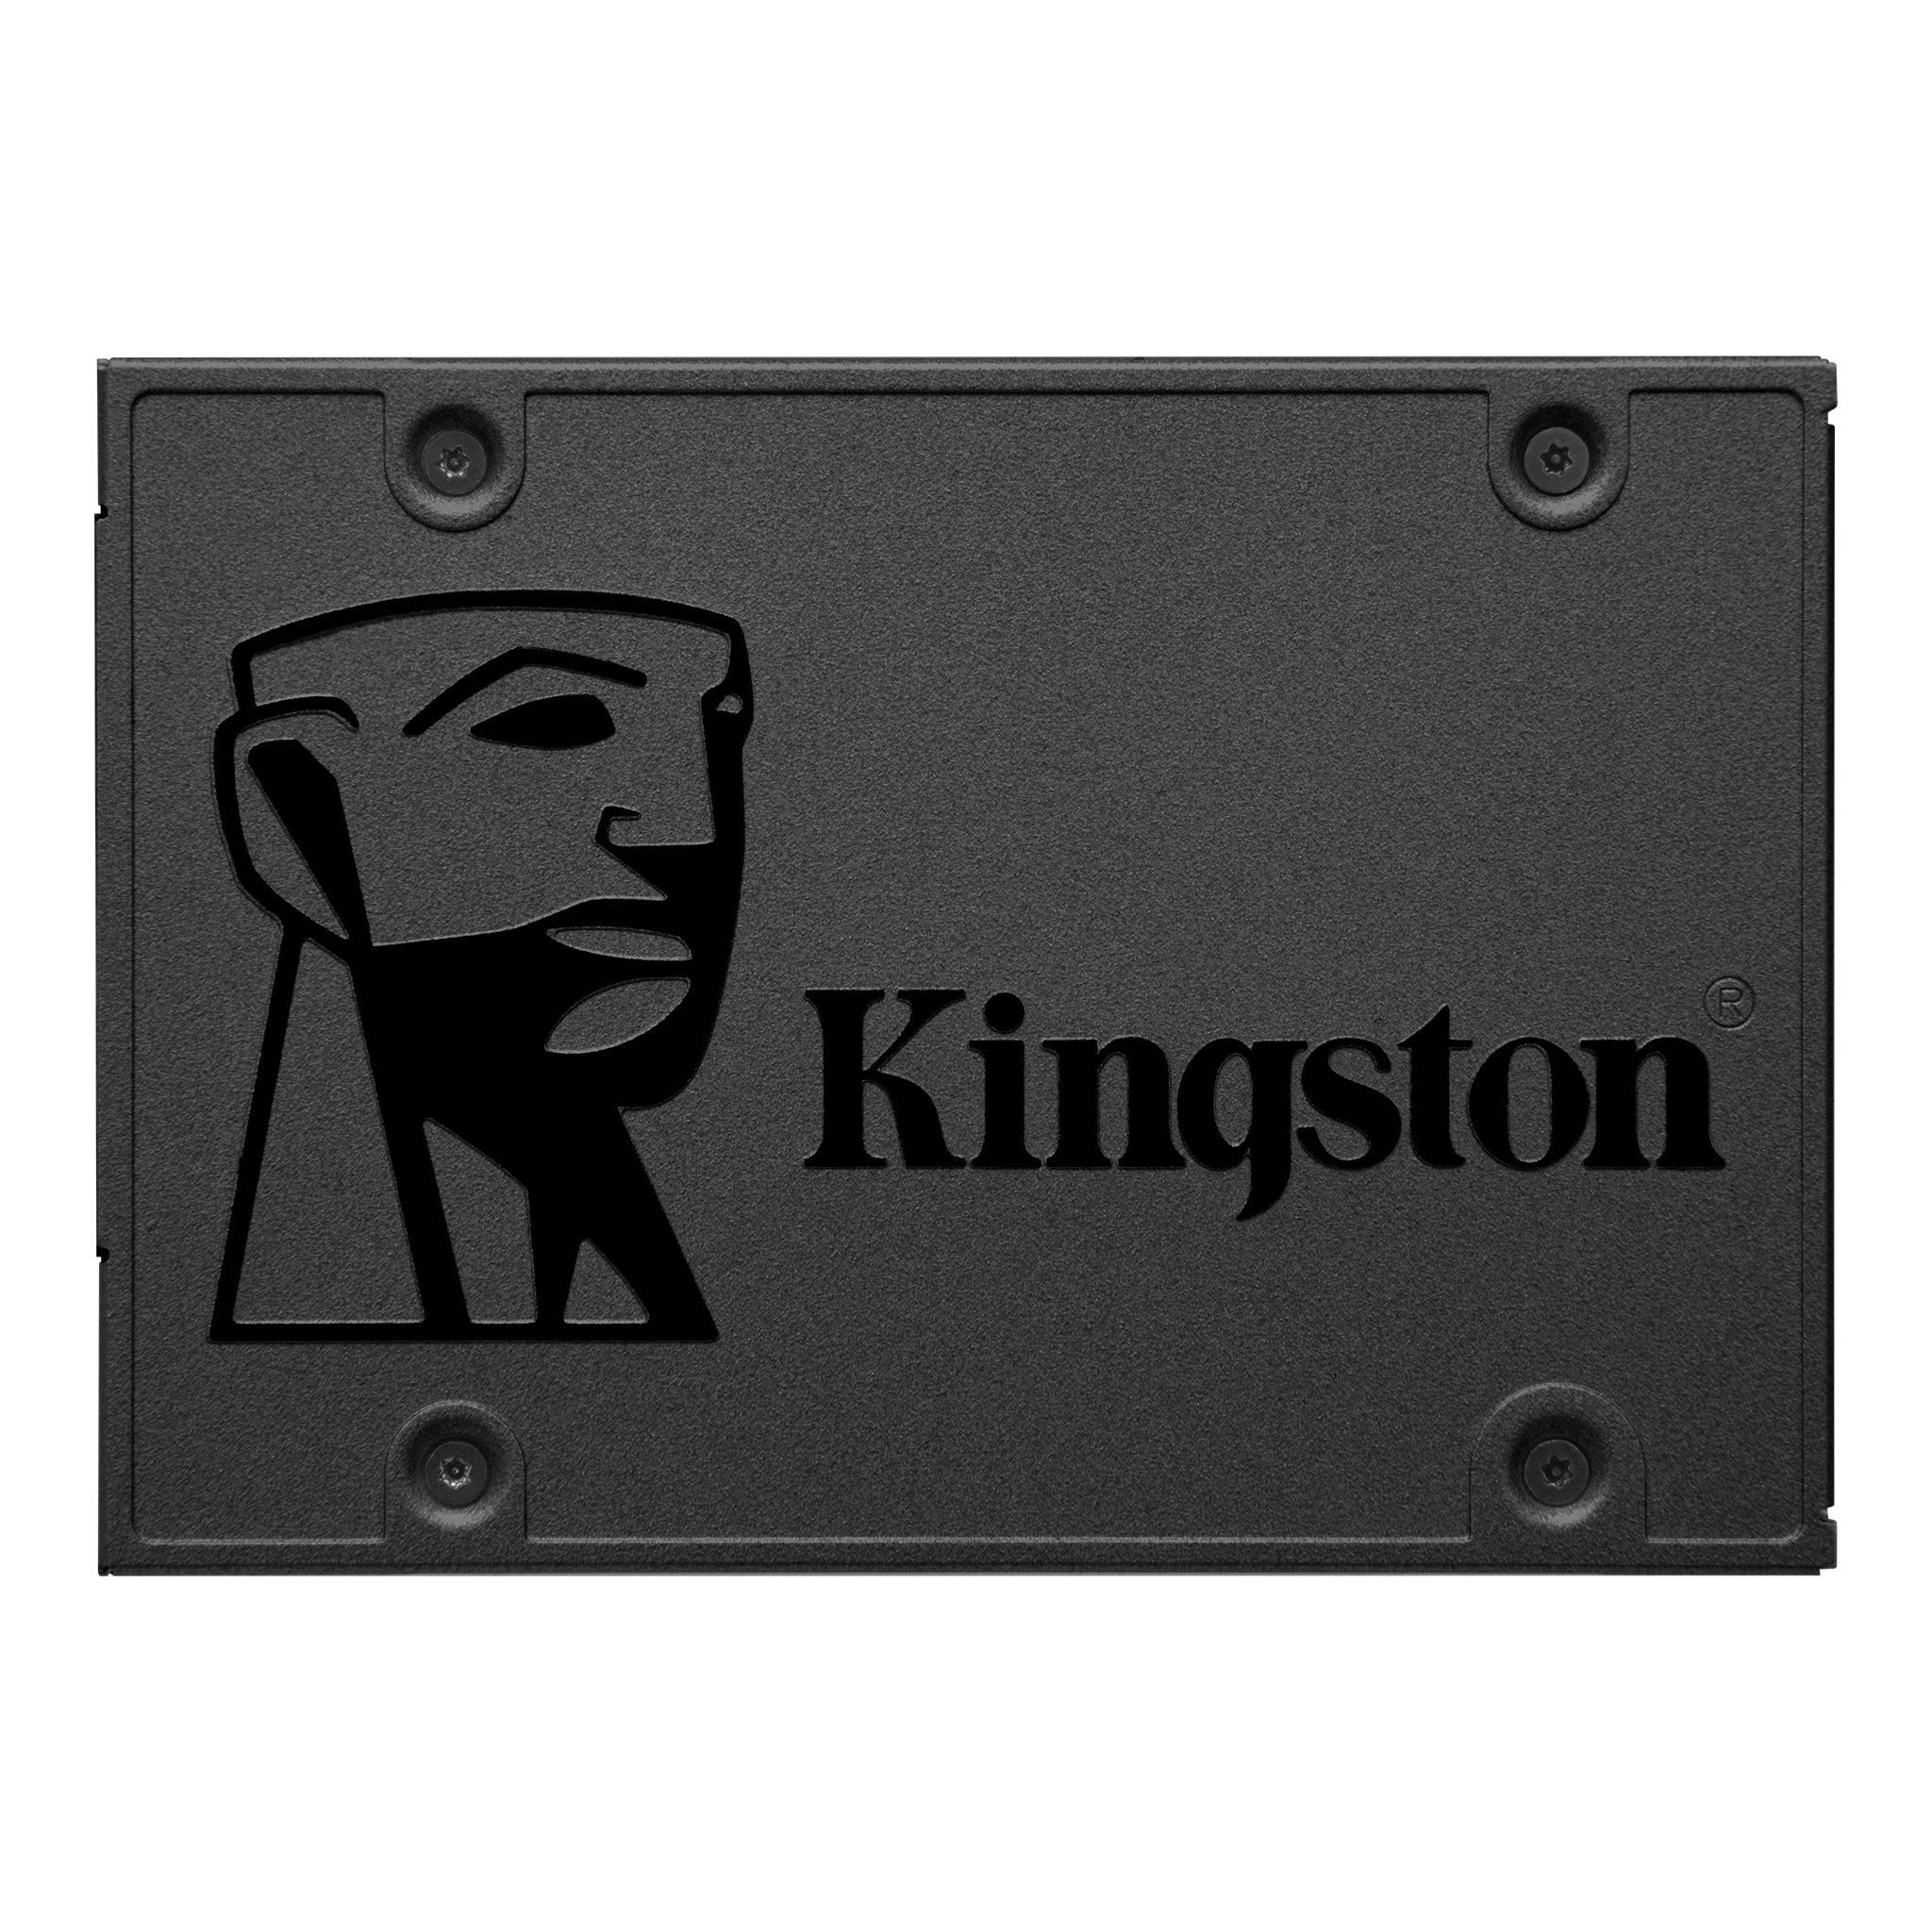 Kingston 480GB SATA SSD